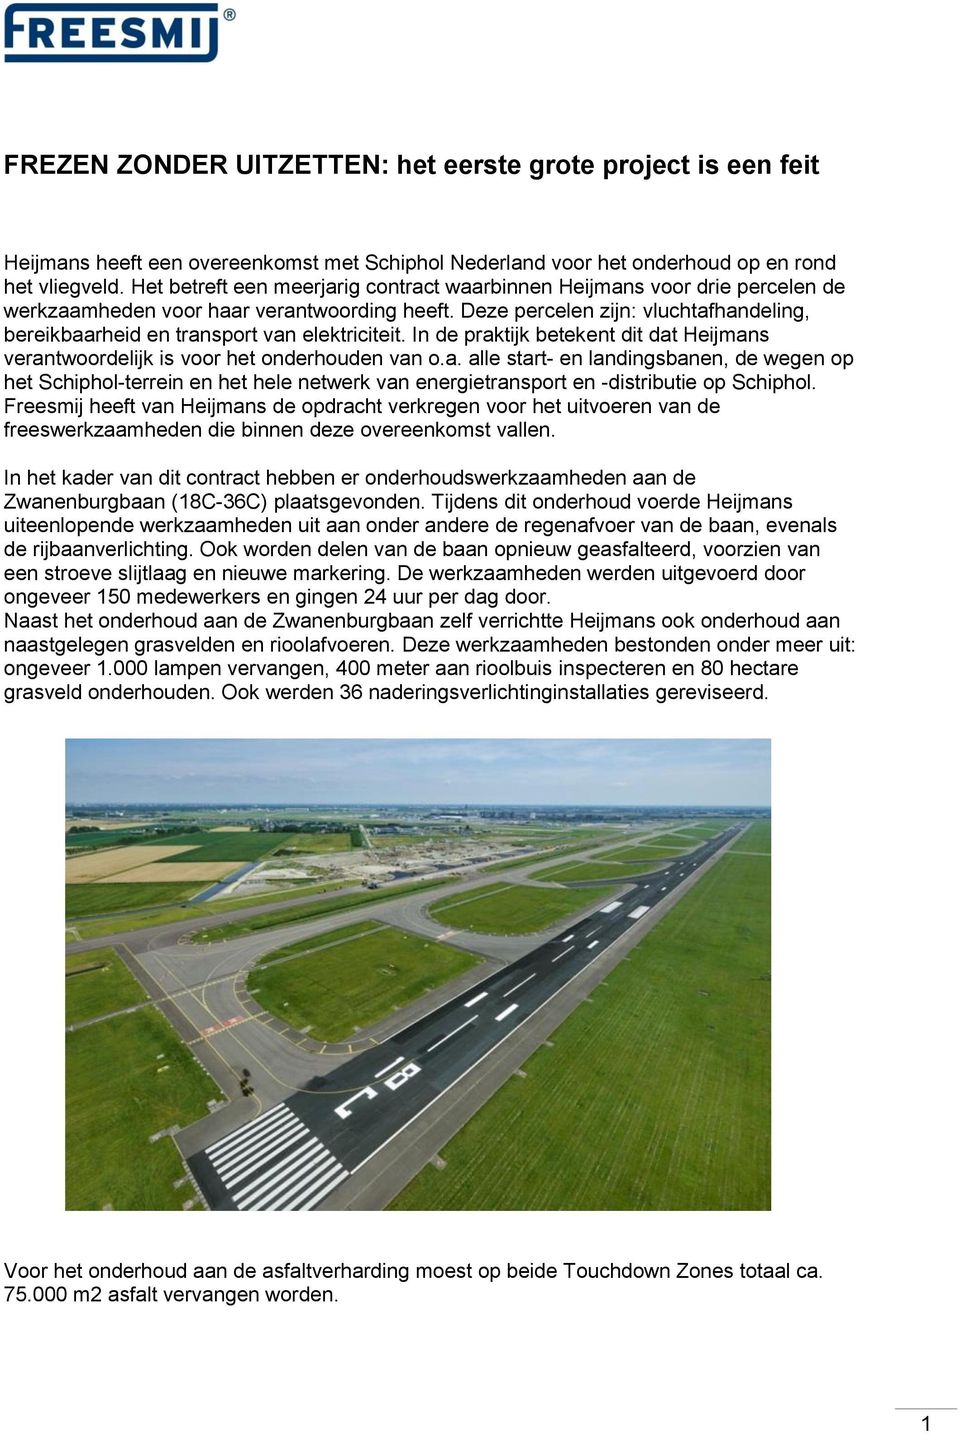 Deze percelen zijn: vluchtafhandeling, bereikbaarheid en transport van elektriciteit. In de praktijk betekent dit dat Heijmans verantwoordelijk is voor het onderhouden van o.a. alle start- en landingsbanen, de wegen op het Schiphol-terrein en het hele netwerk van energietransport en -distributie op Schiphol.